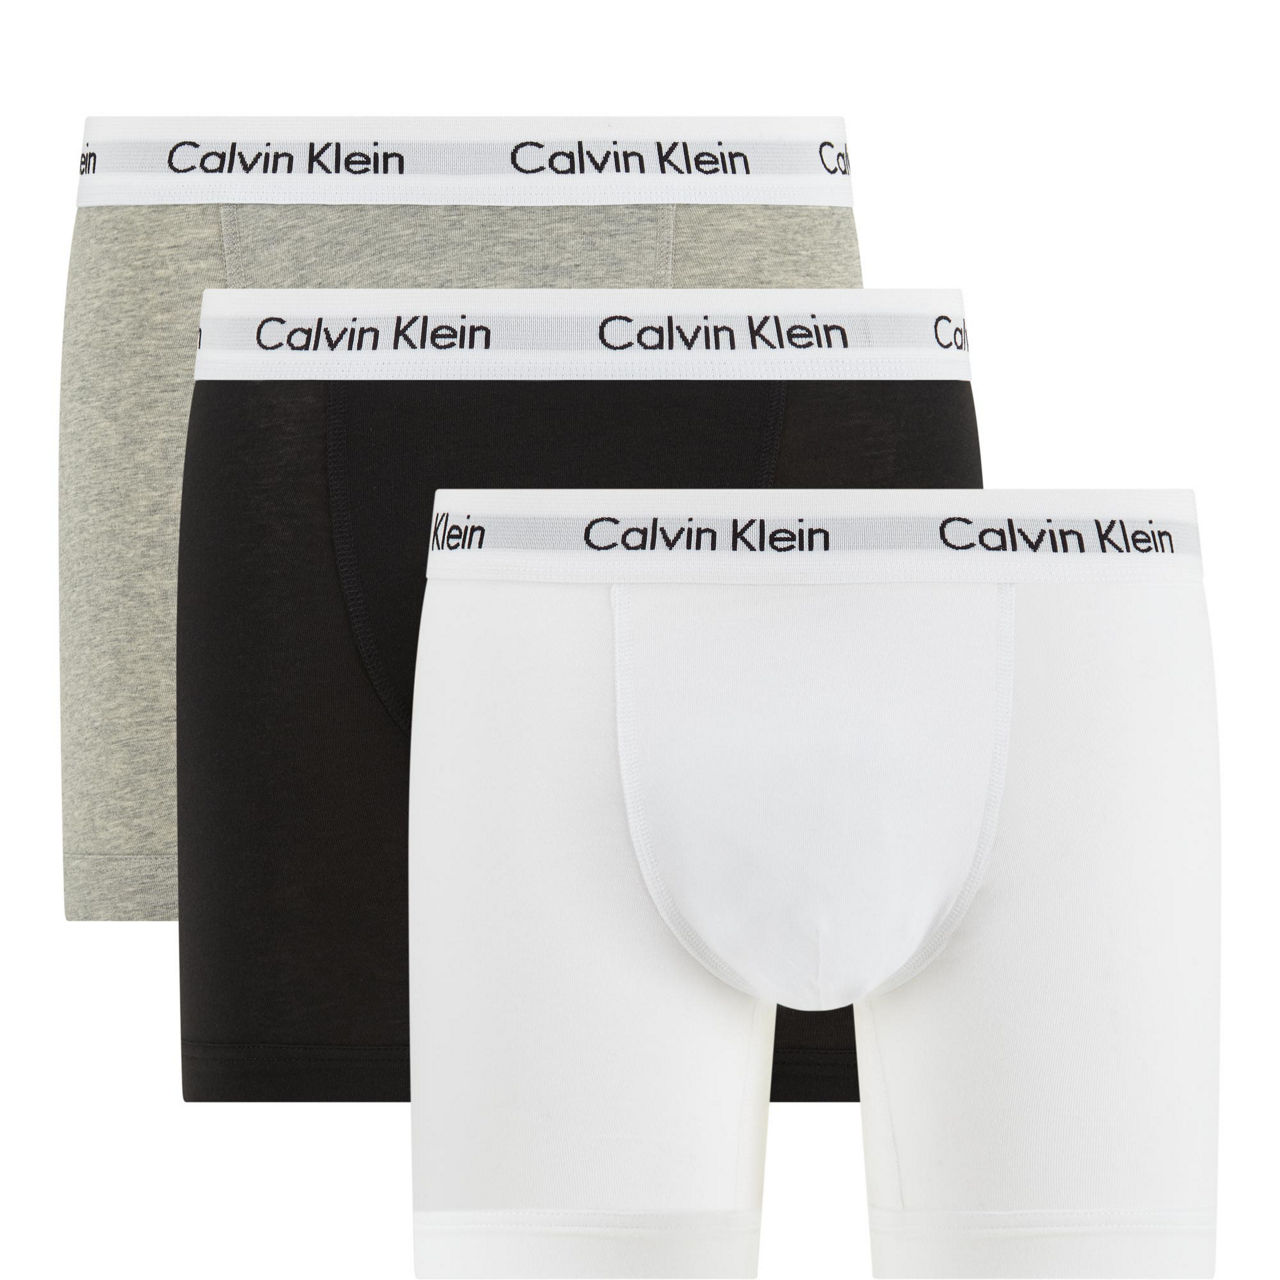 BJORN BORG / CALVIN KLEIN / STANCE Calvin Klein MODERN COTTON